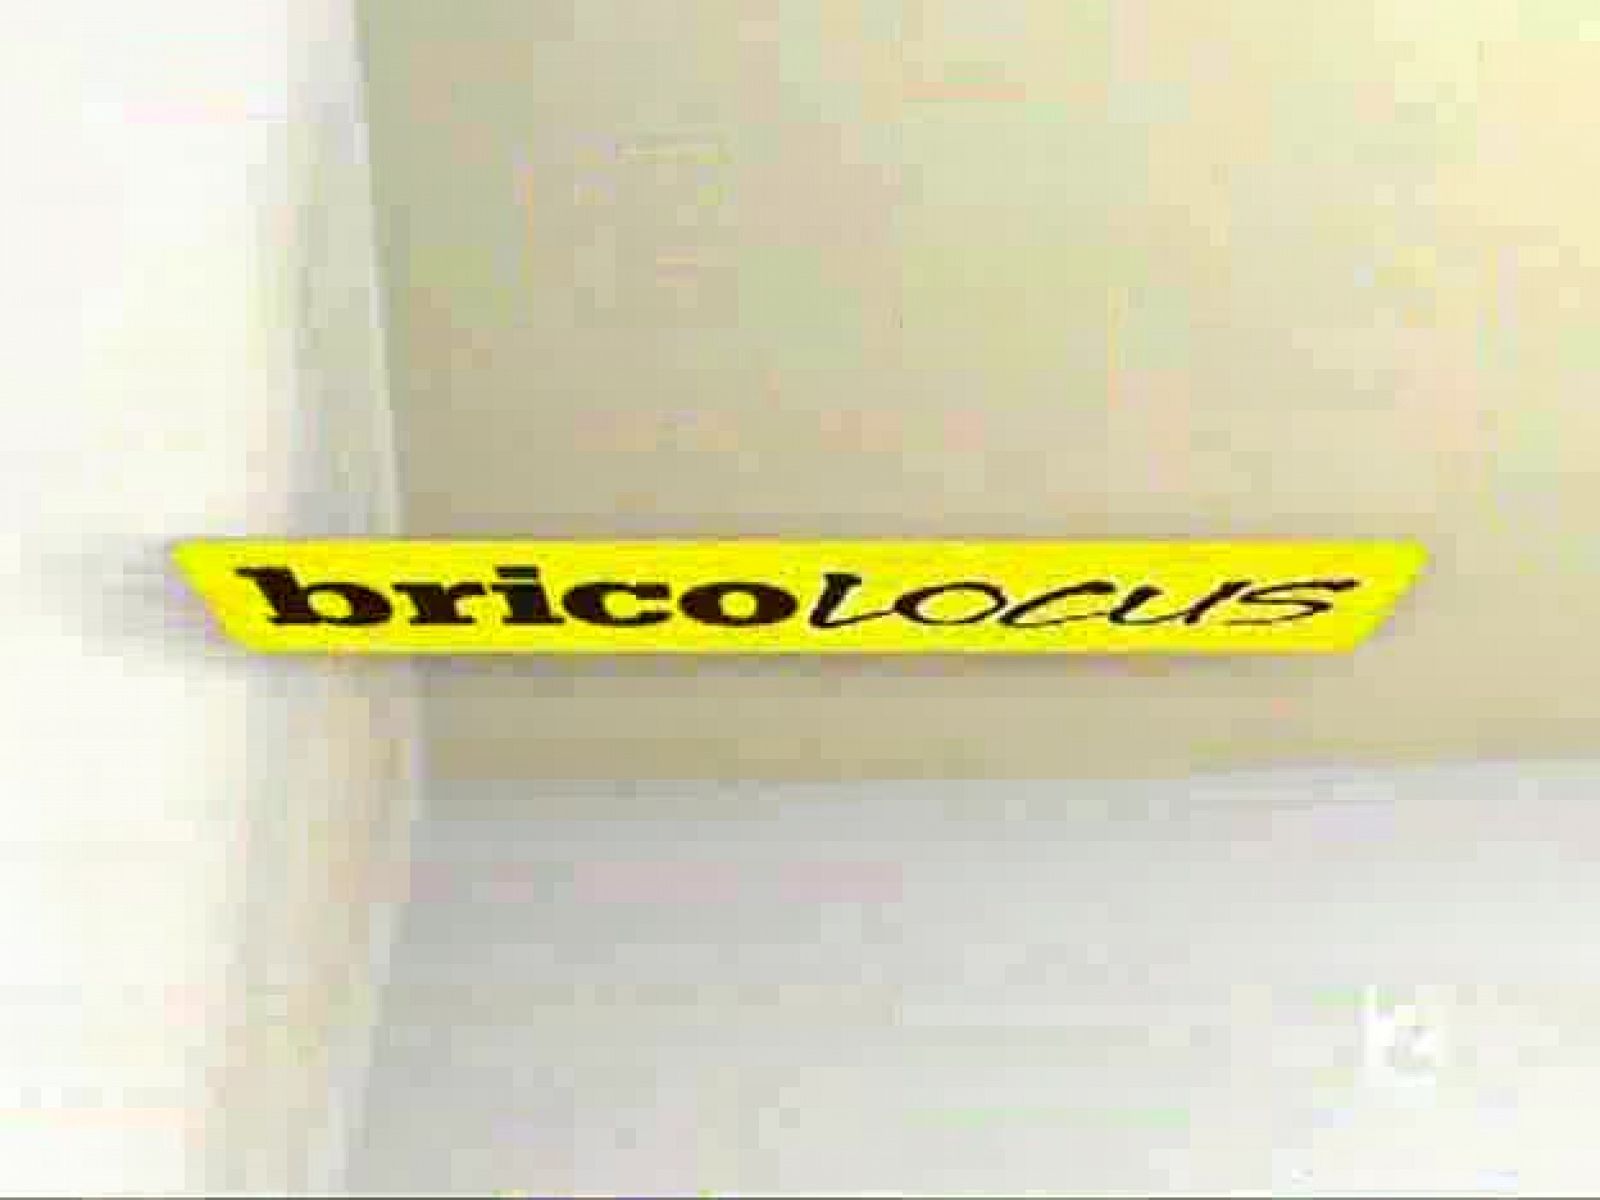 Bricolocus - 11/07/08